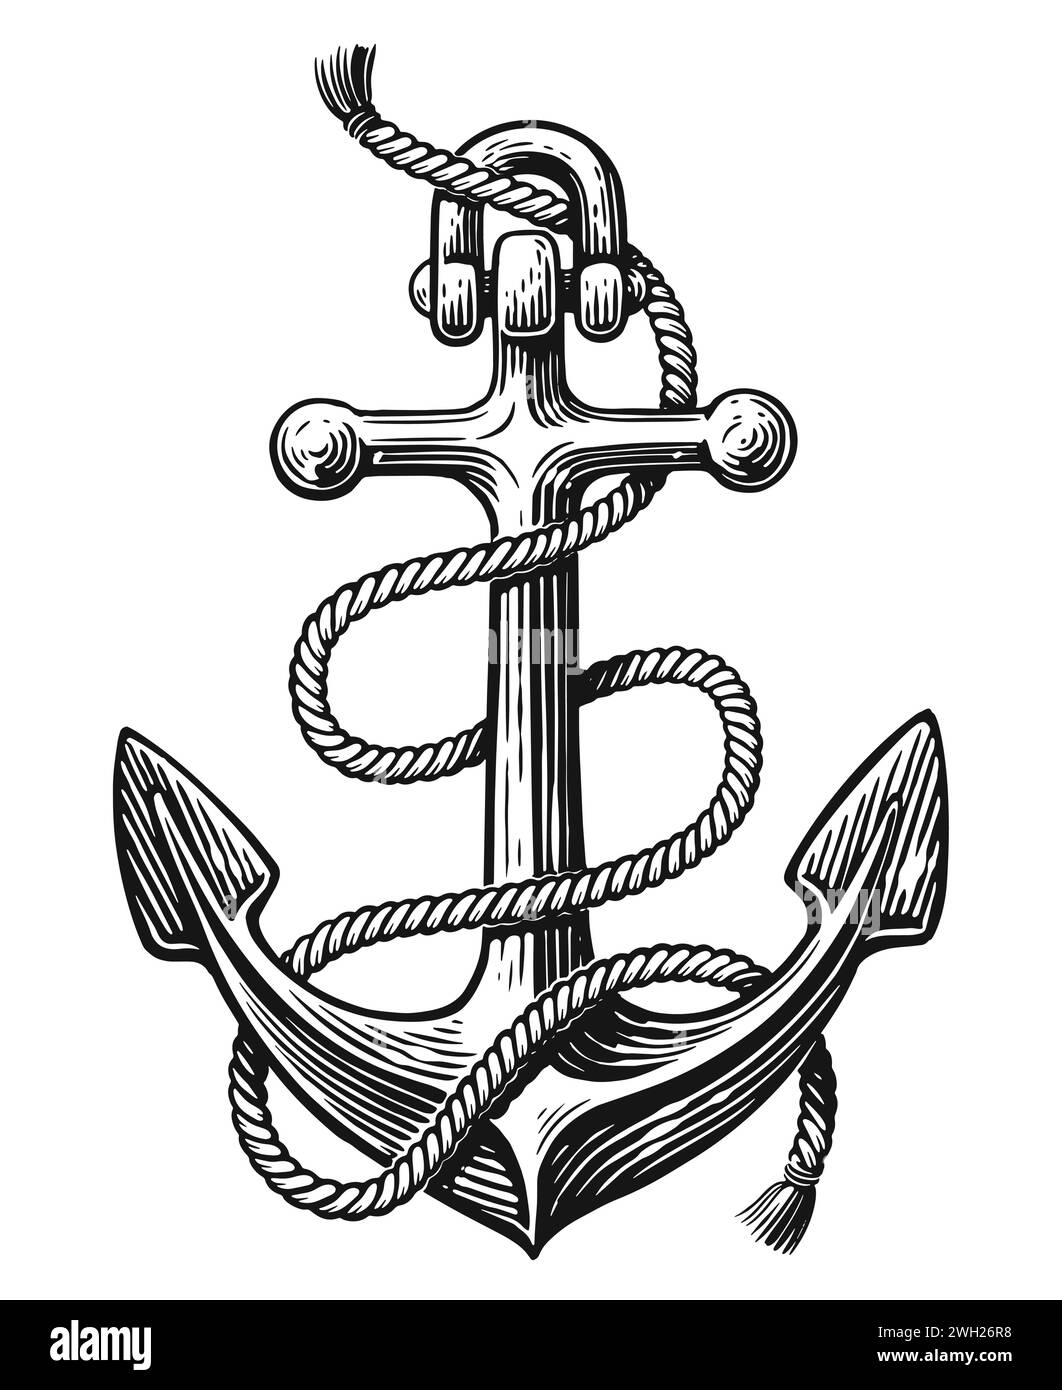 Ancre de mer de navire avec corde. Illustration vectorielle vintage dessinée à la main Illustration de Vecteur